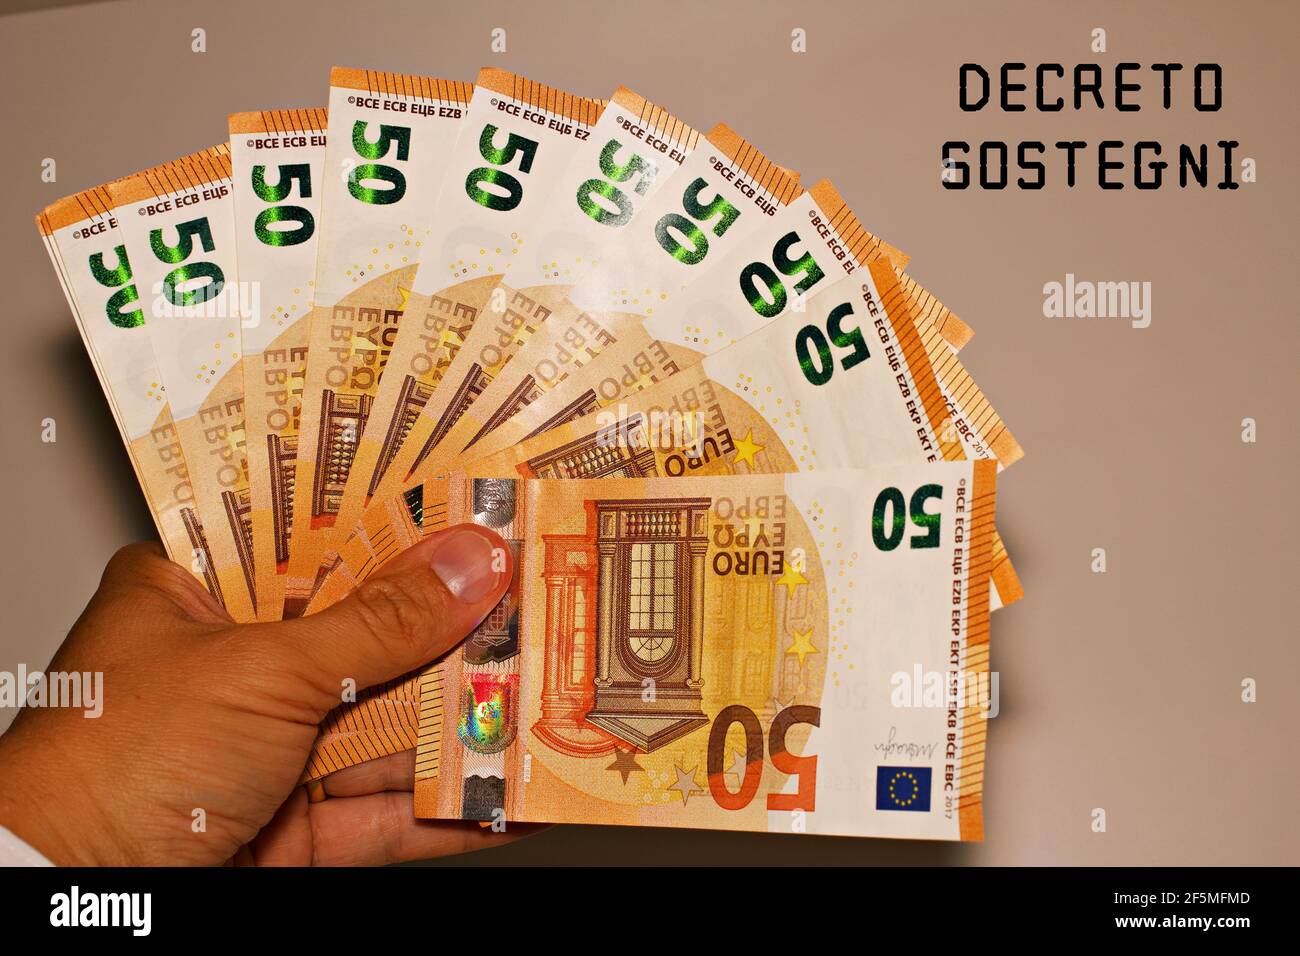 Tenir à la main des billets avec le signe 'Defreto Sostegni' traduit dans l'aide financière. Incitation du gouvernement italien. Banque D'Images